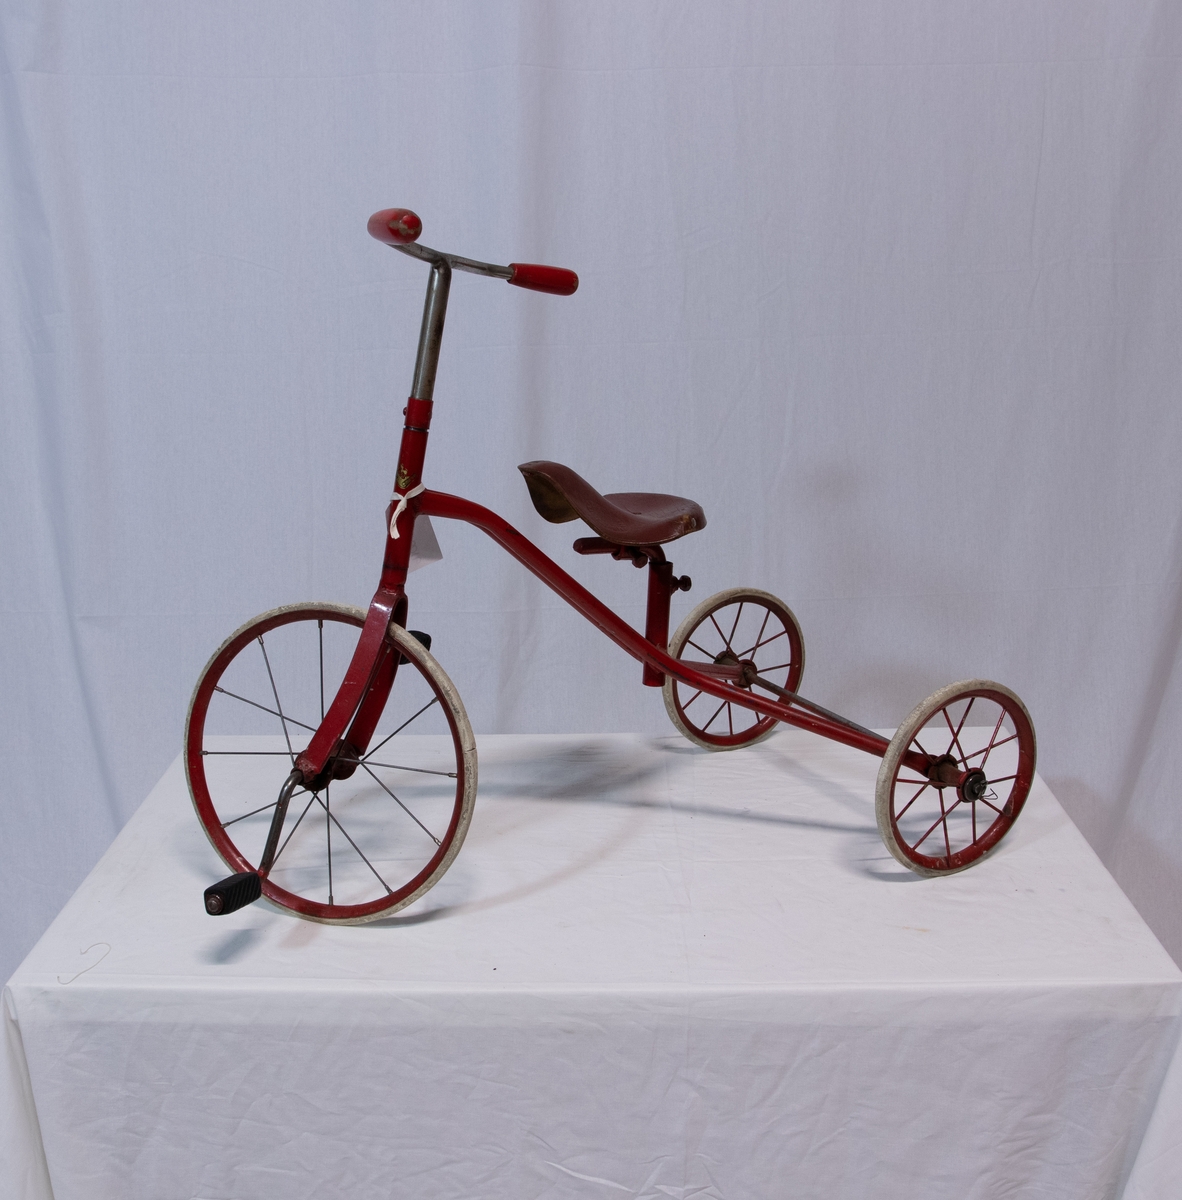 Trehjulsykkel m/rødmalt sykkelramme i stål. To mindre bakhjul, et stort forhjul. Eiker i lettmetall. Hard gråhvit gummi på hjulene. På pedalene tredd to gummi fotstykker, riflemønster. På styret
to sylindriske trehåndtak, rødmalt.